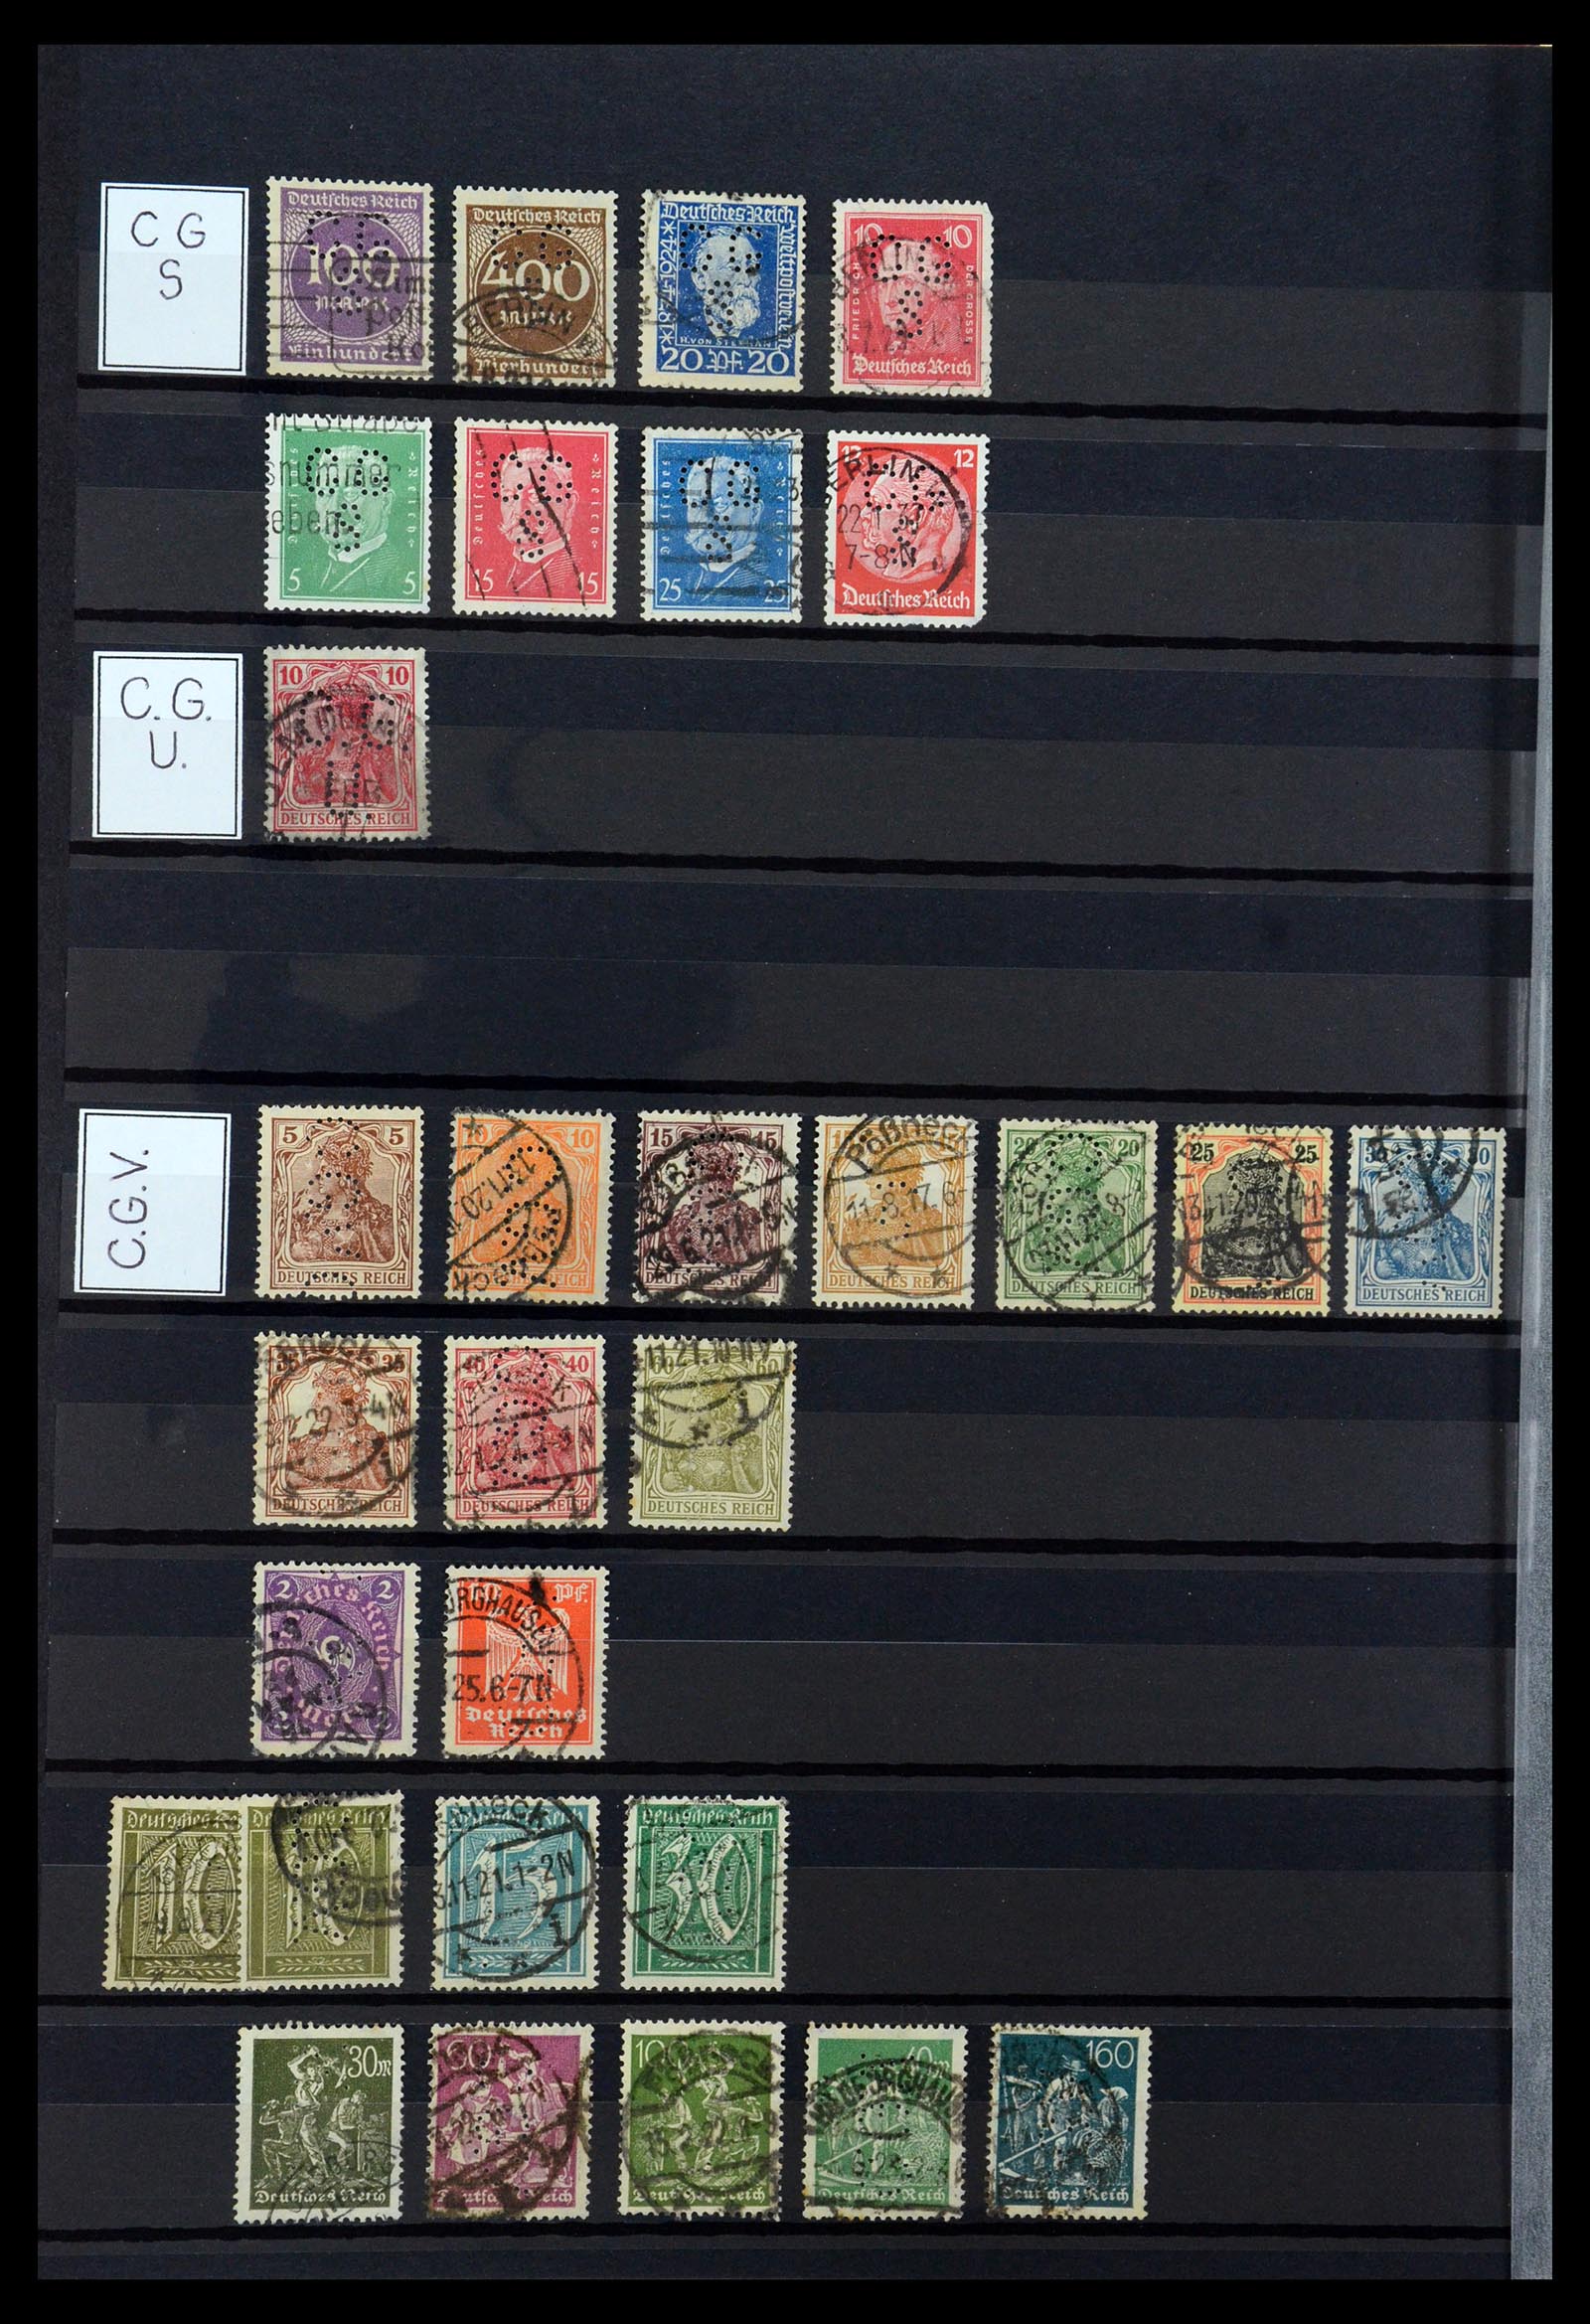 36405 070 - Stamp collection 36405 German Reich perfins 1880-1945.